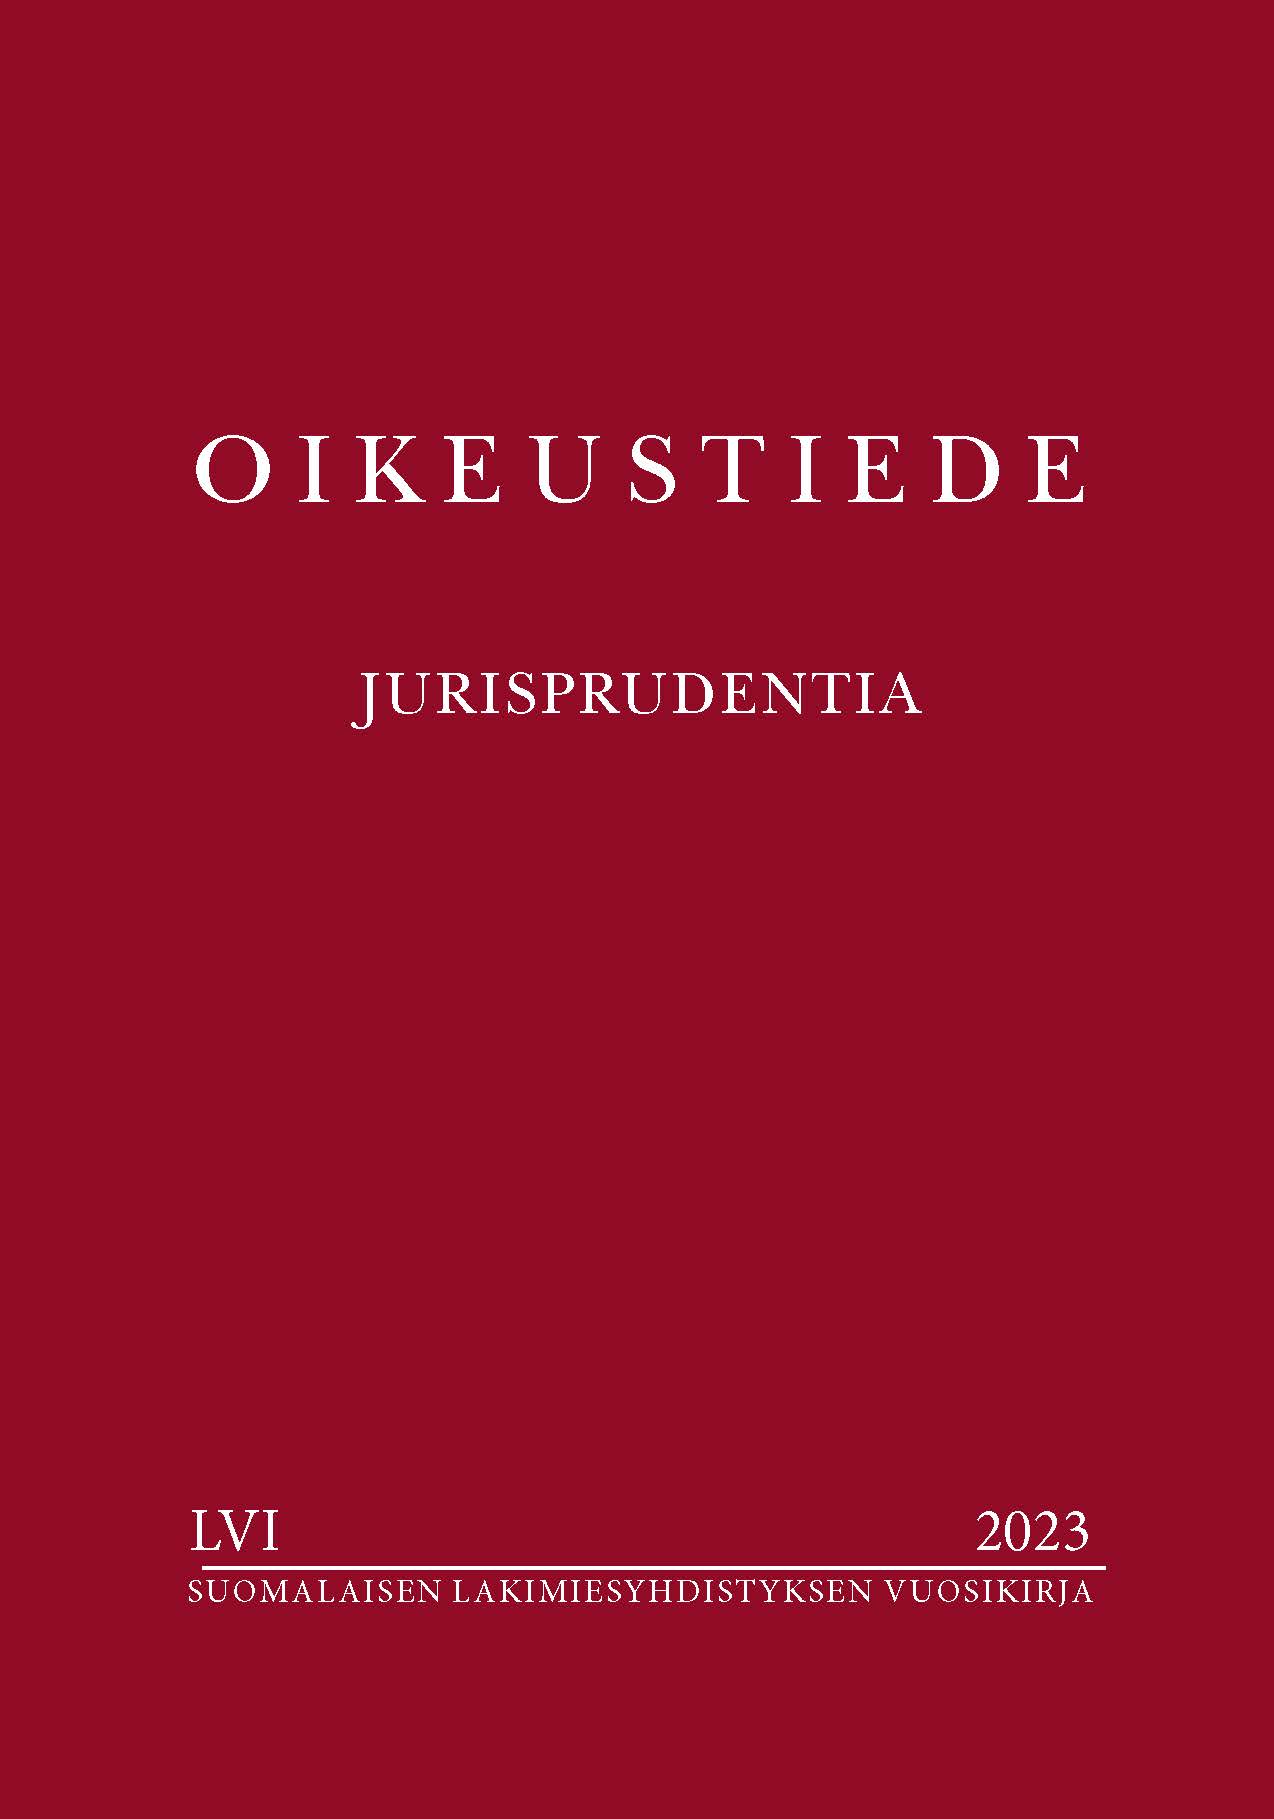 					Näytä Vol 56 Nro LVI (2023): Oikeustiede–Jurisprudentia-vuosikirja
				